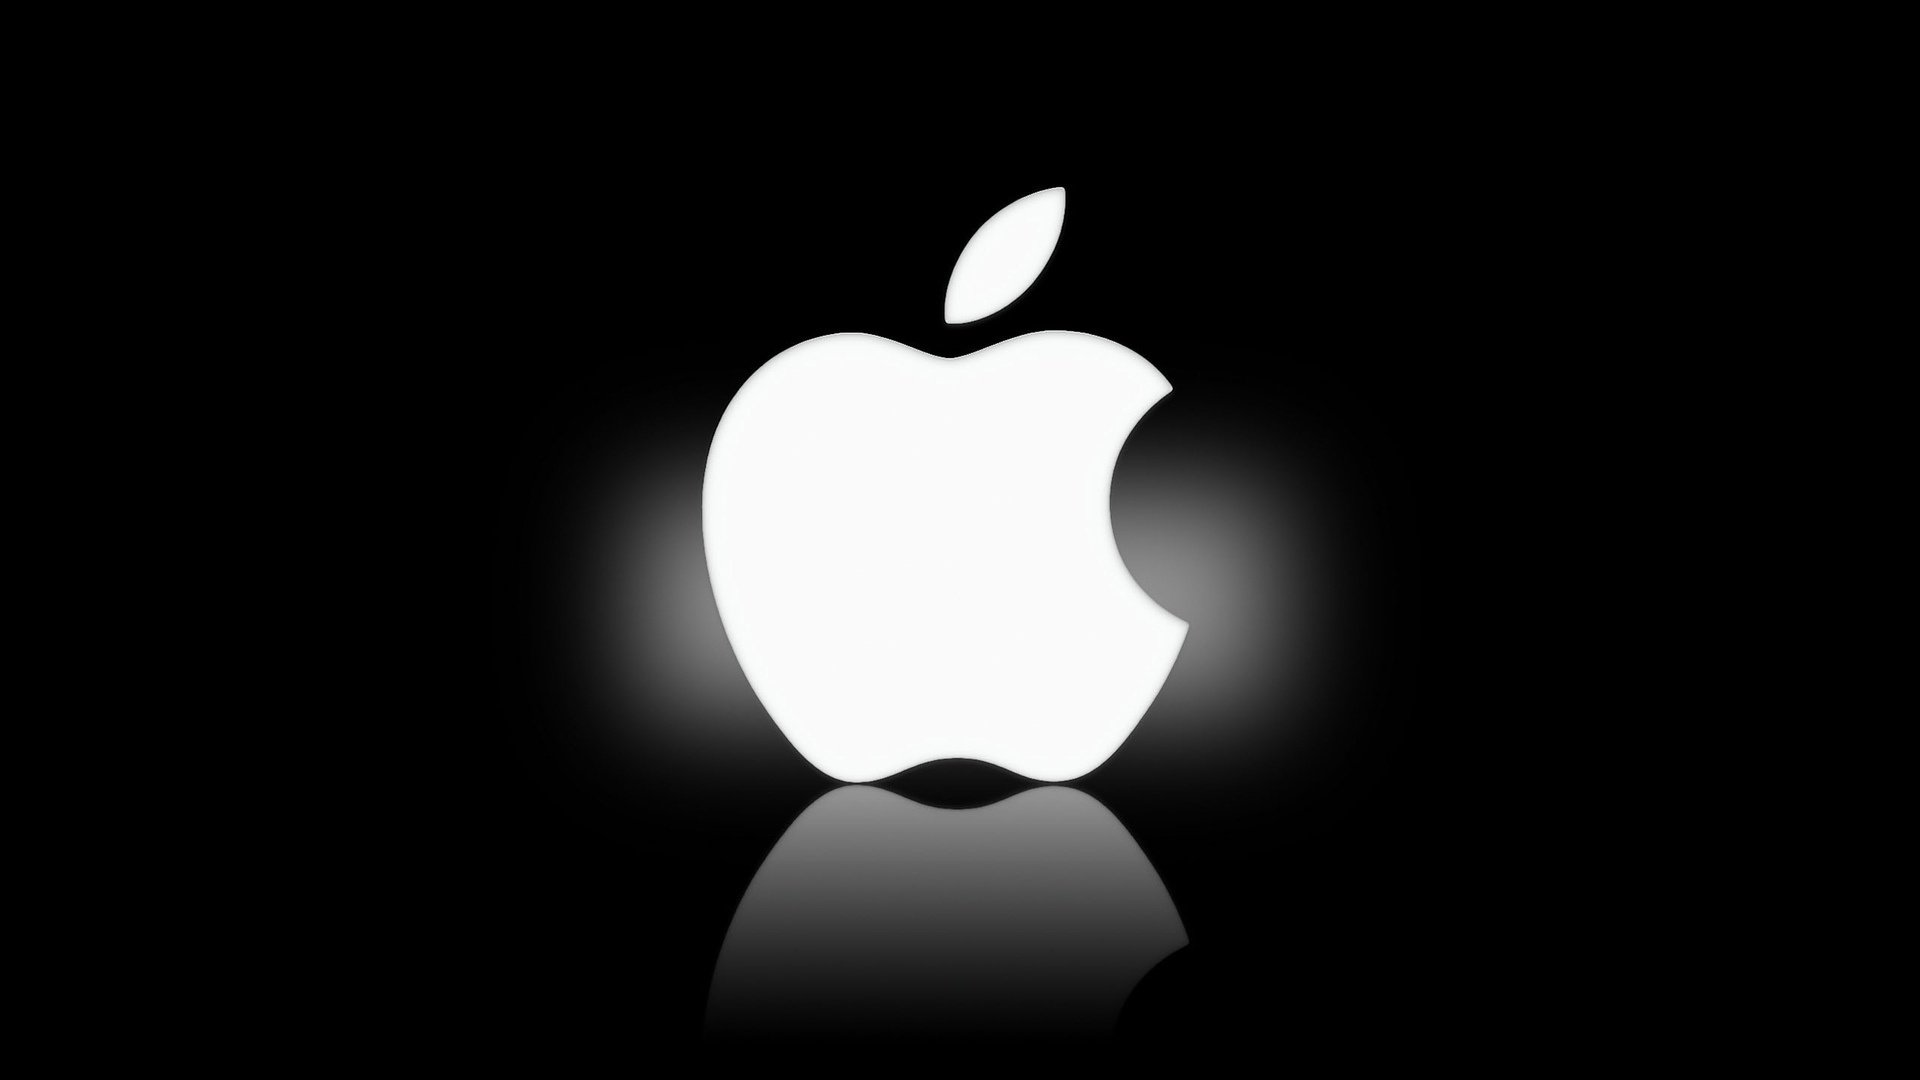 DesktopClock3D 1.92 instal the new for apple